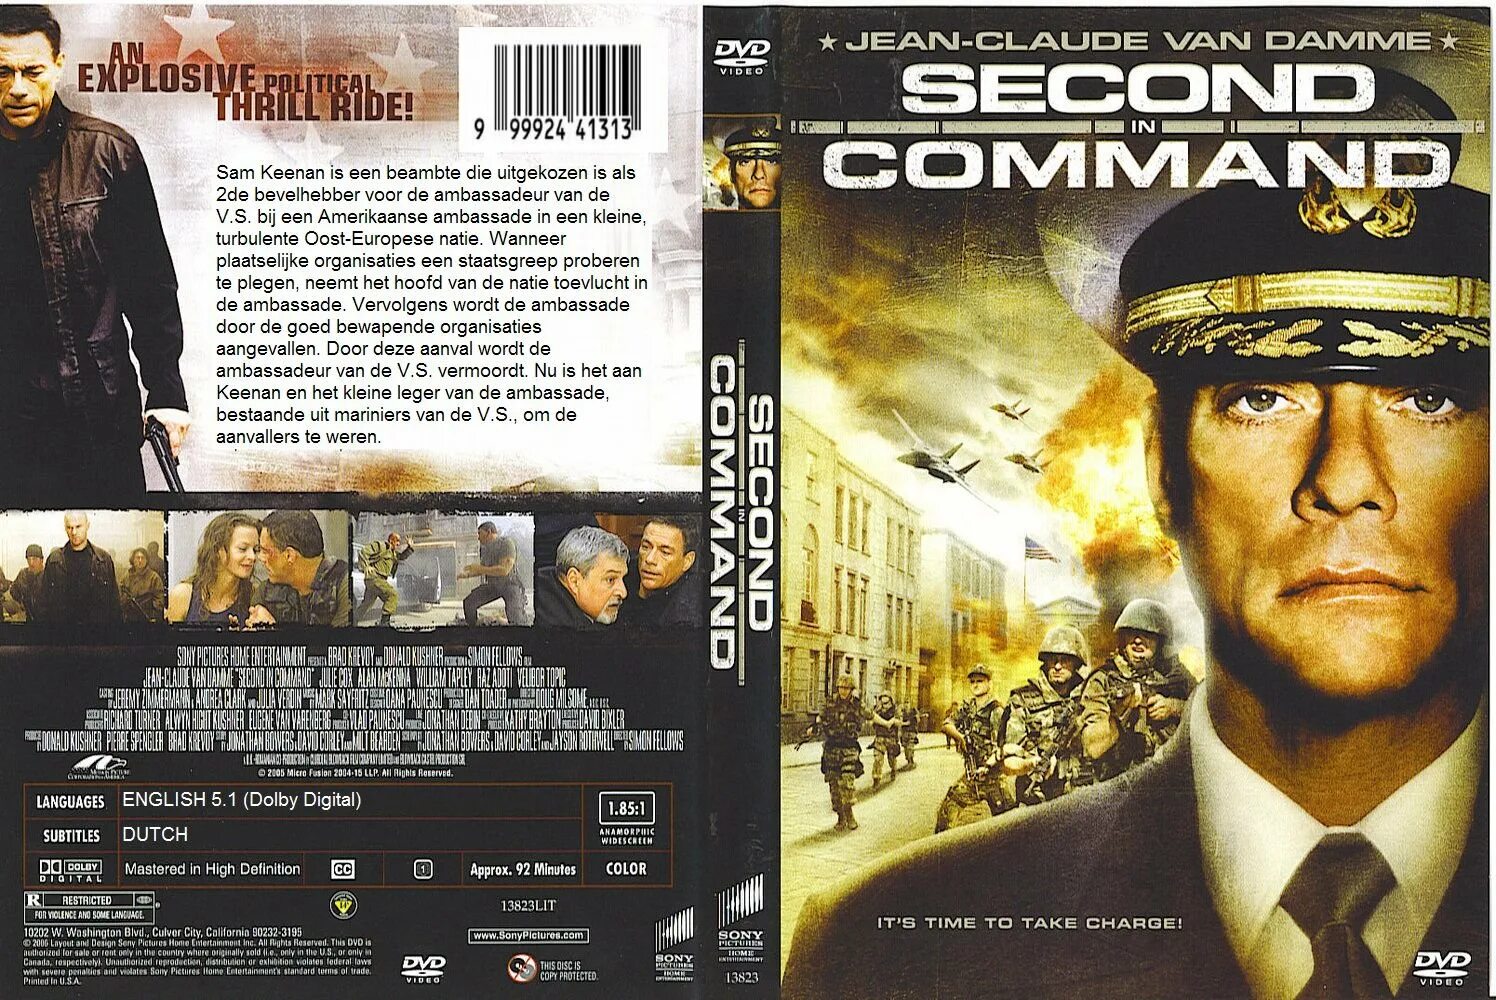 Hours away. Второй в команде 2006. Второй в команде second in Command (2006). DVD 2006.